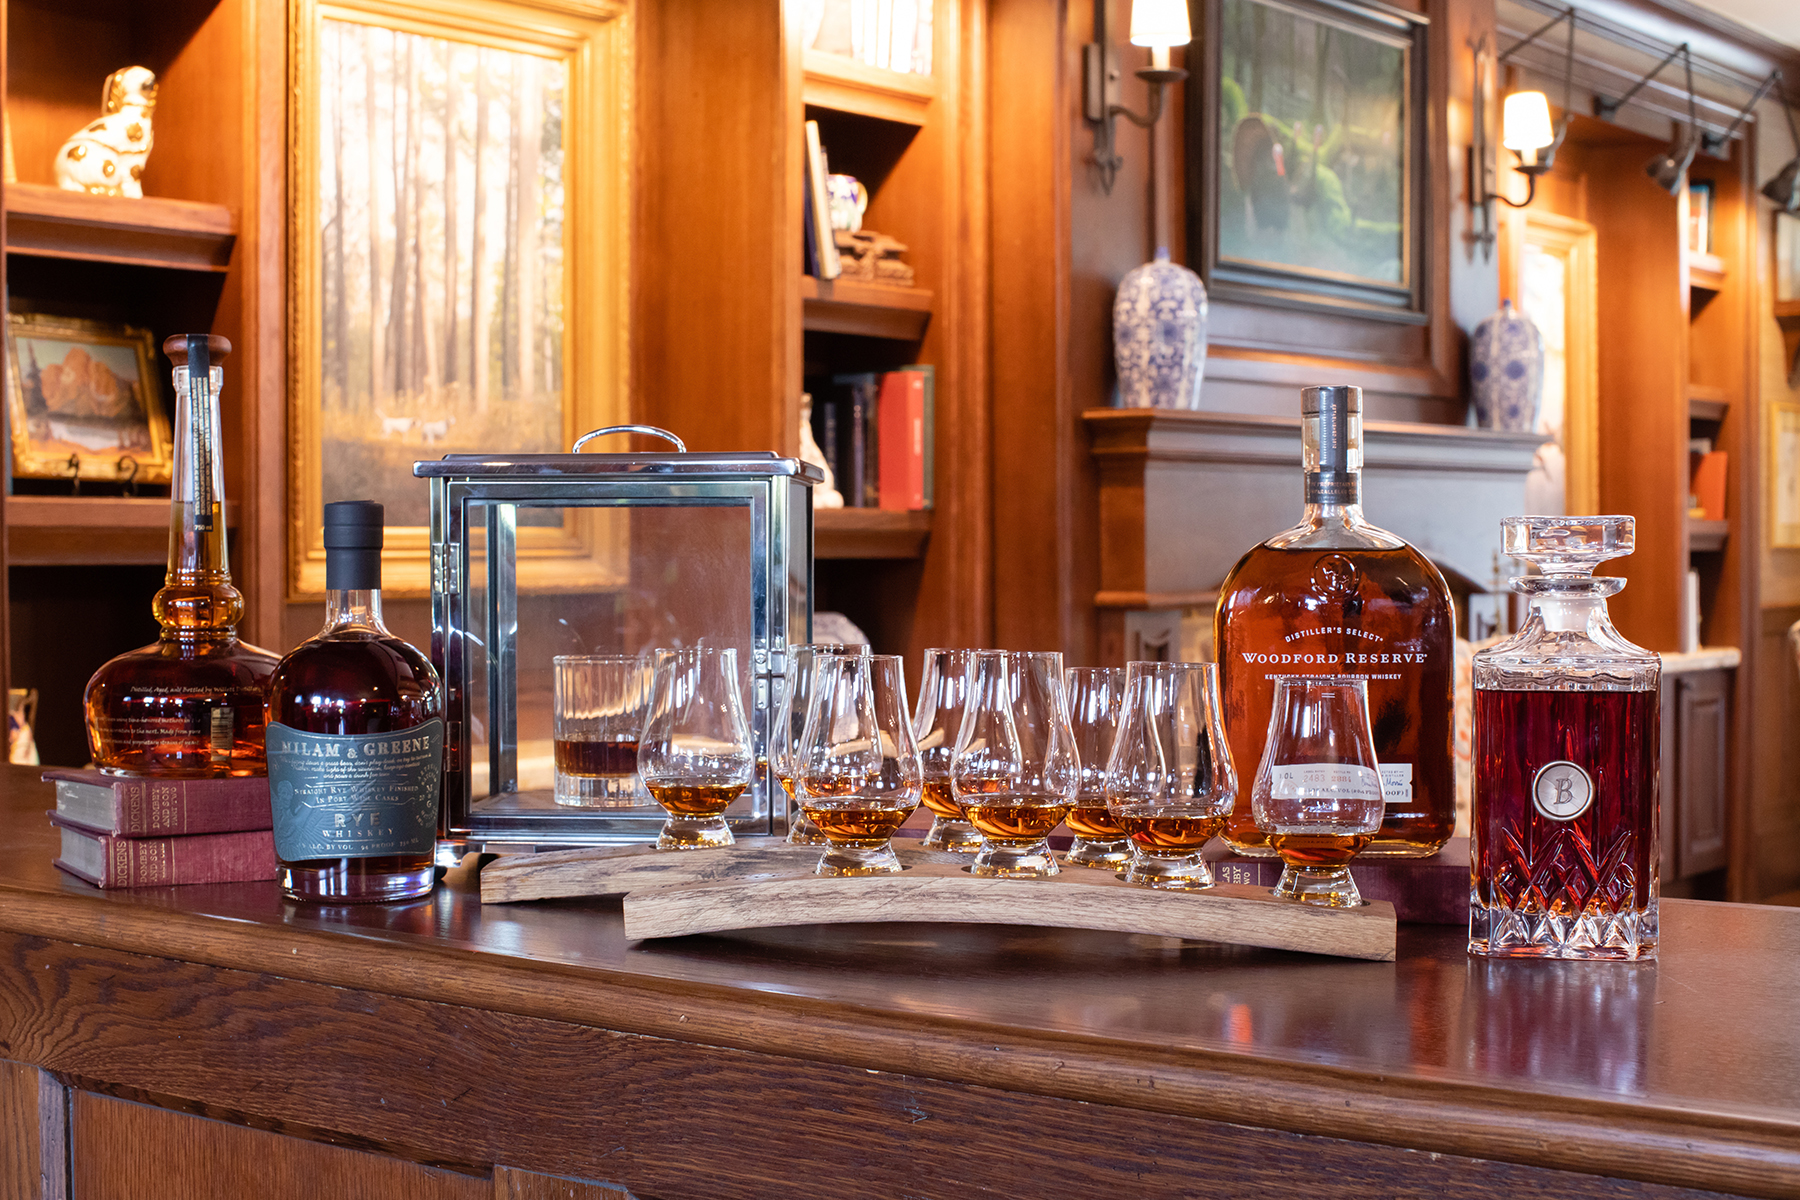 Bourbon taste test set up in Barnsley Resort